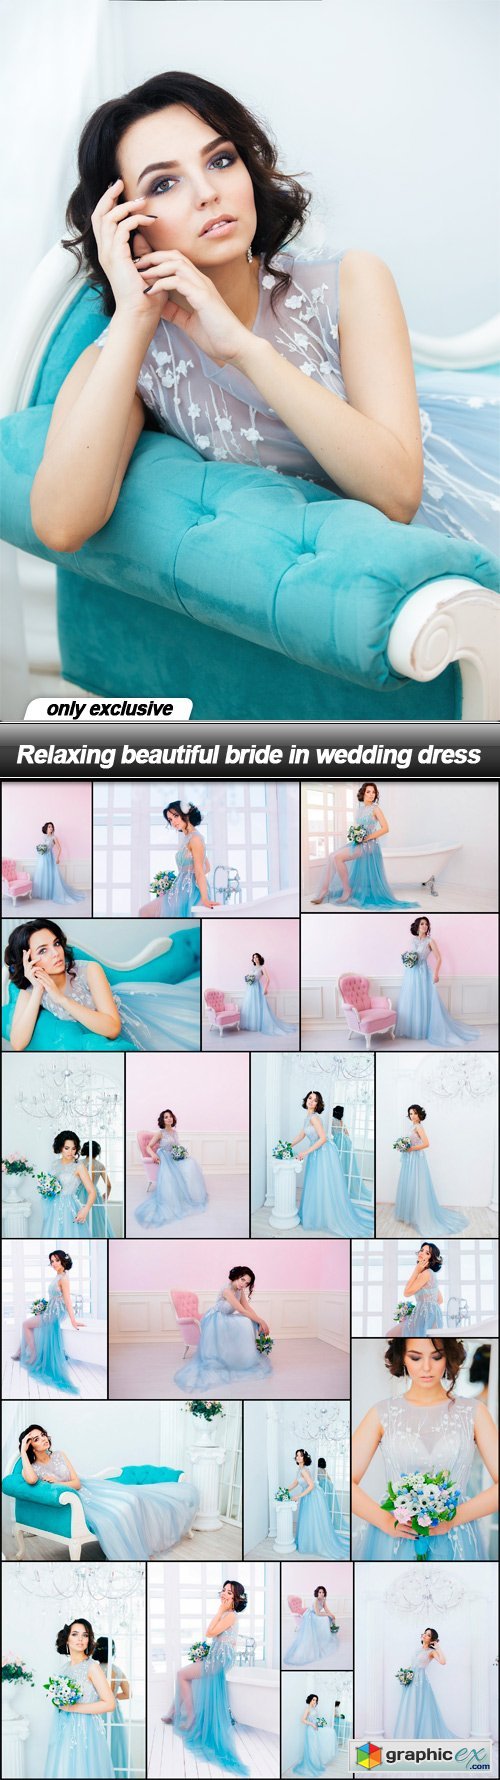 Relaxing beautiful bride in wedding dress - 22 UHQ JPEG